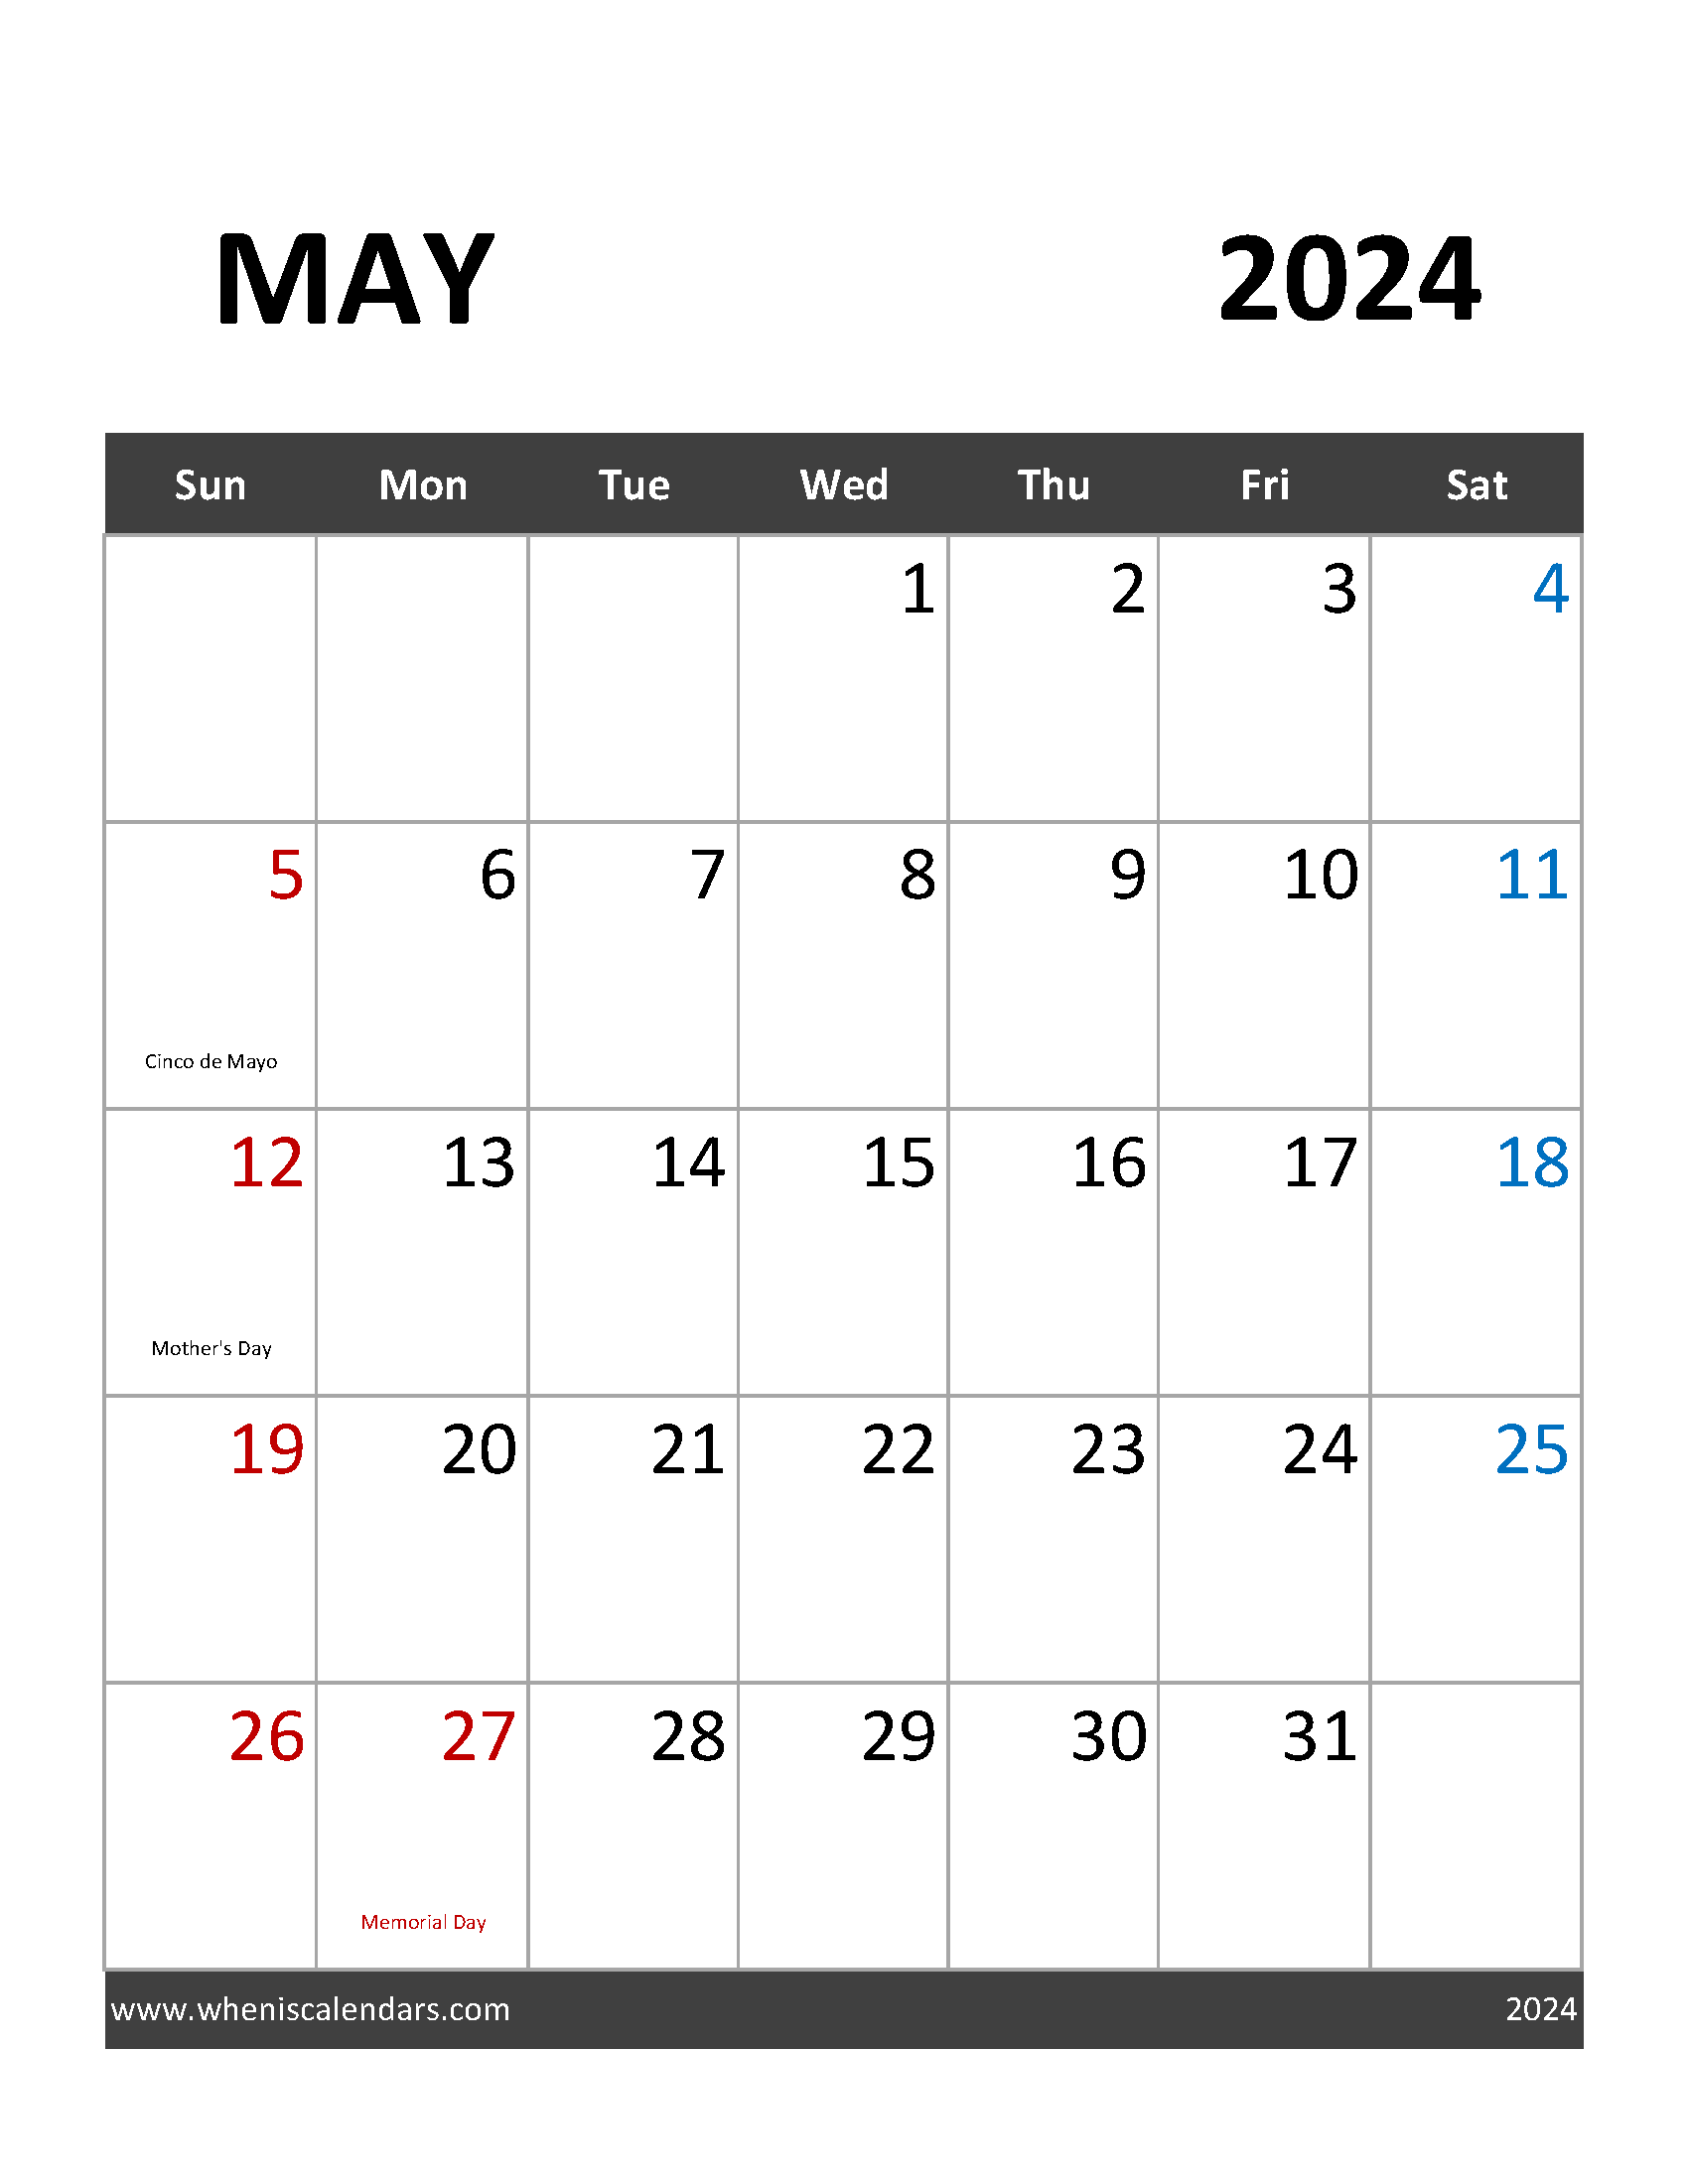 May 2024 Holidays Calendar